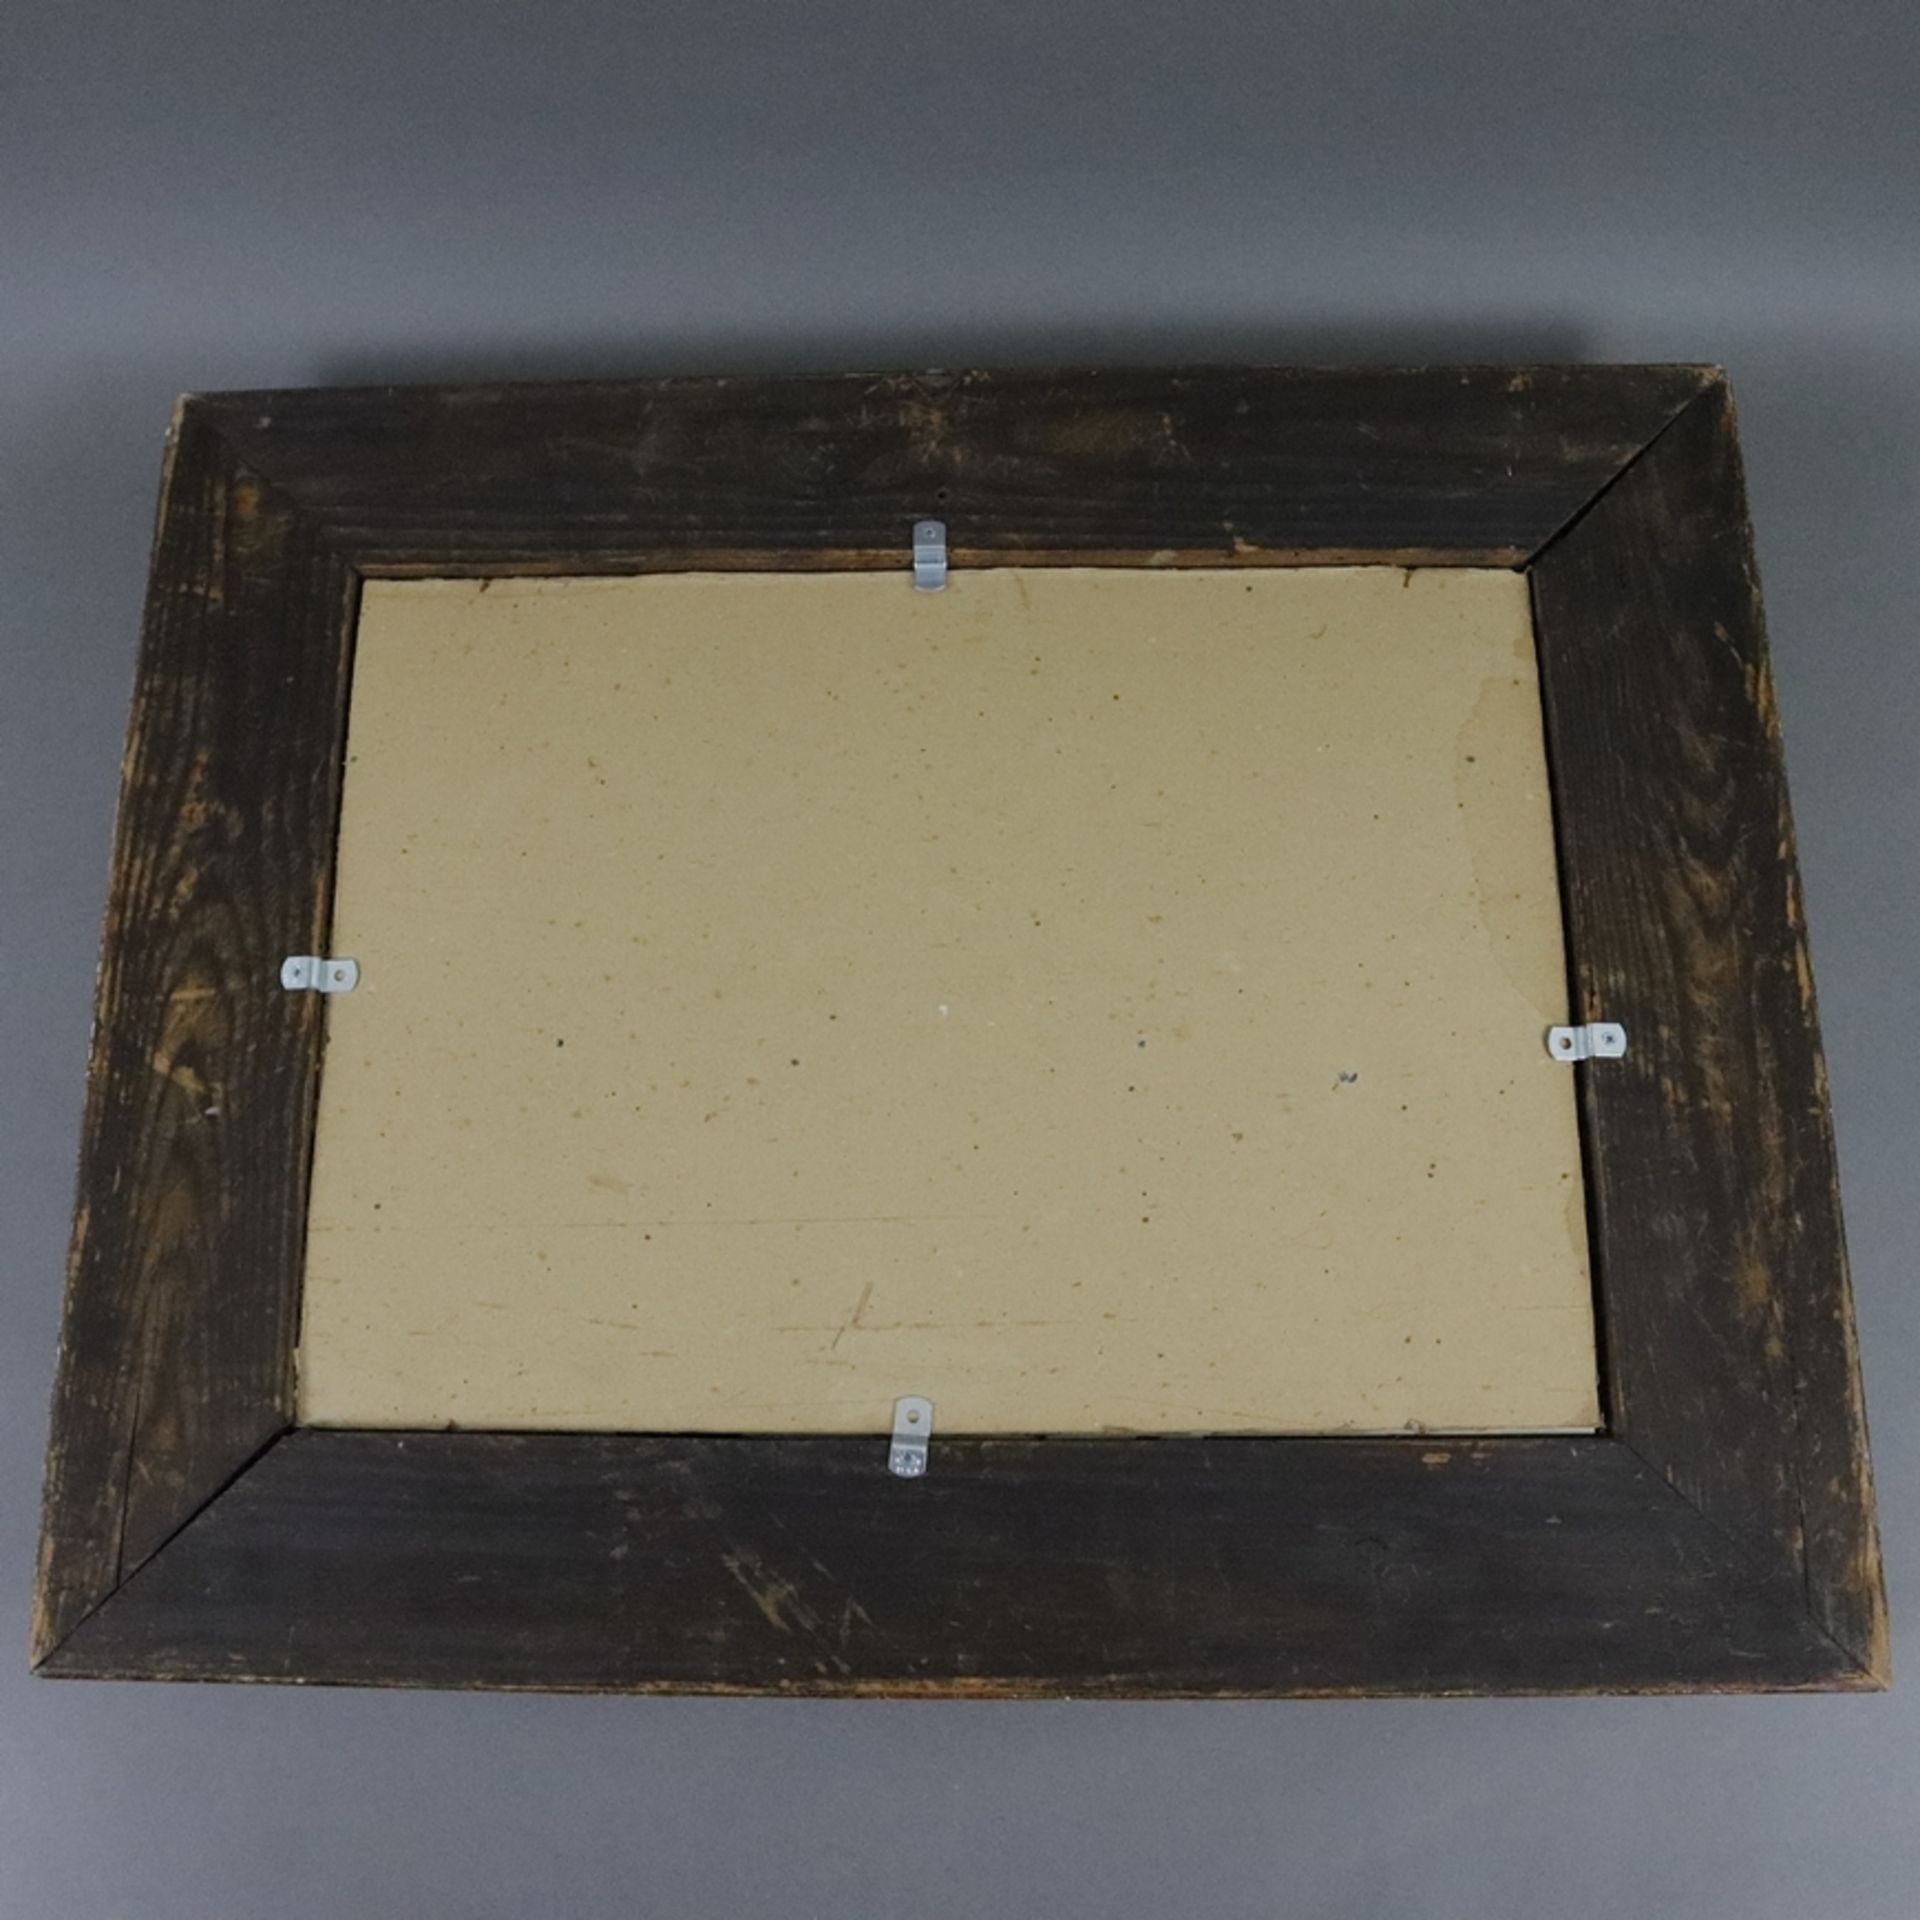 Wandspiegel - Holz, Stuckdekor, vergoldet, rechteckige Spiegelplatte, Innenmaße: 45x32cm, Außenmaße - Bild 4 aus 4